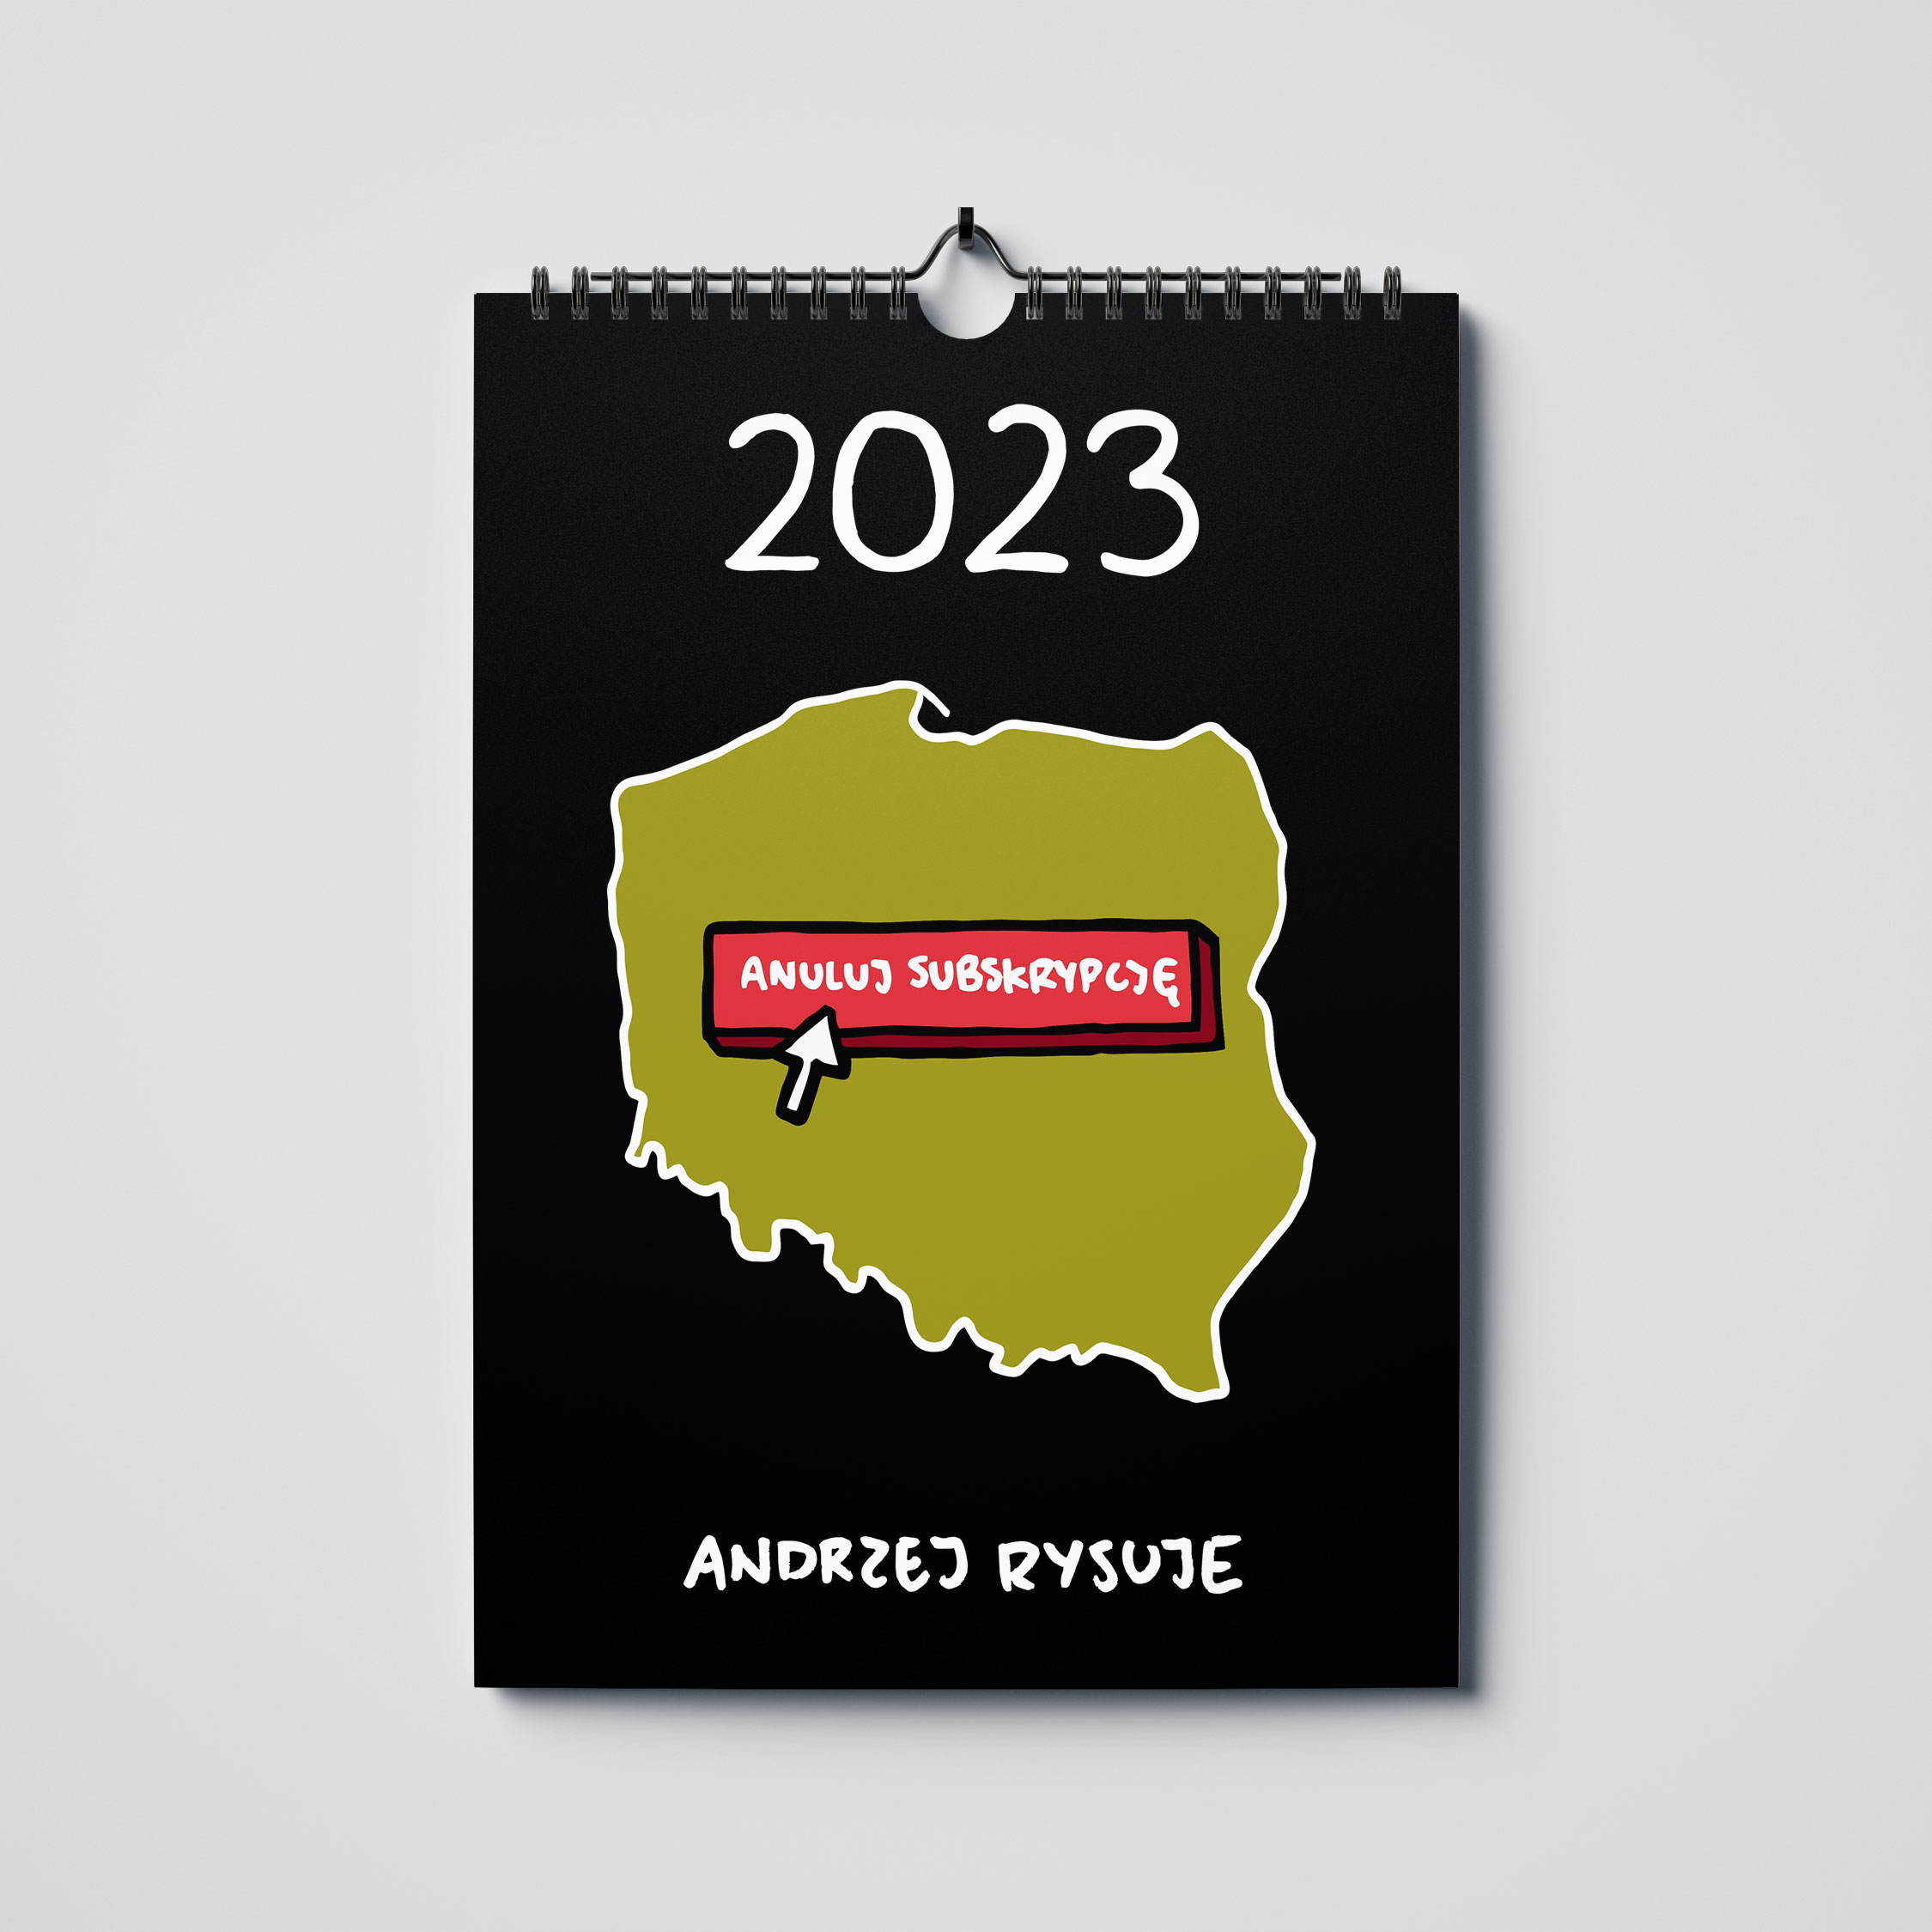 Kalendarz Andrzej Rysuje 2023